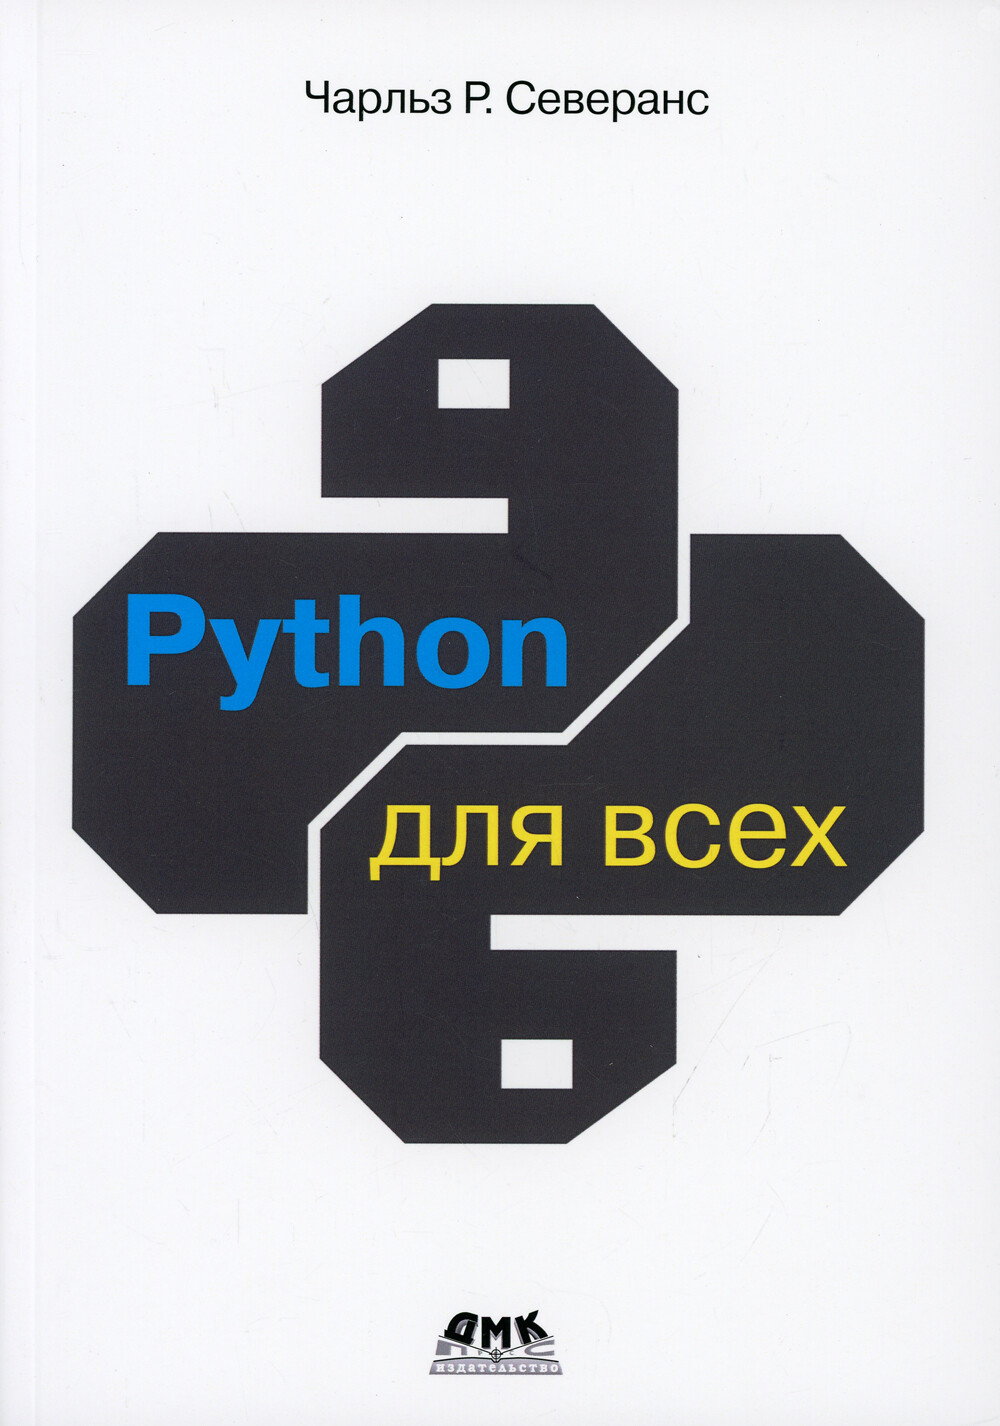 Python для всех 2021